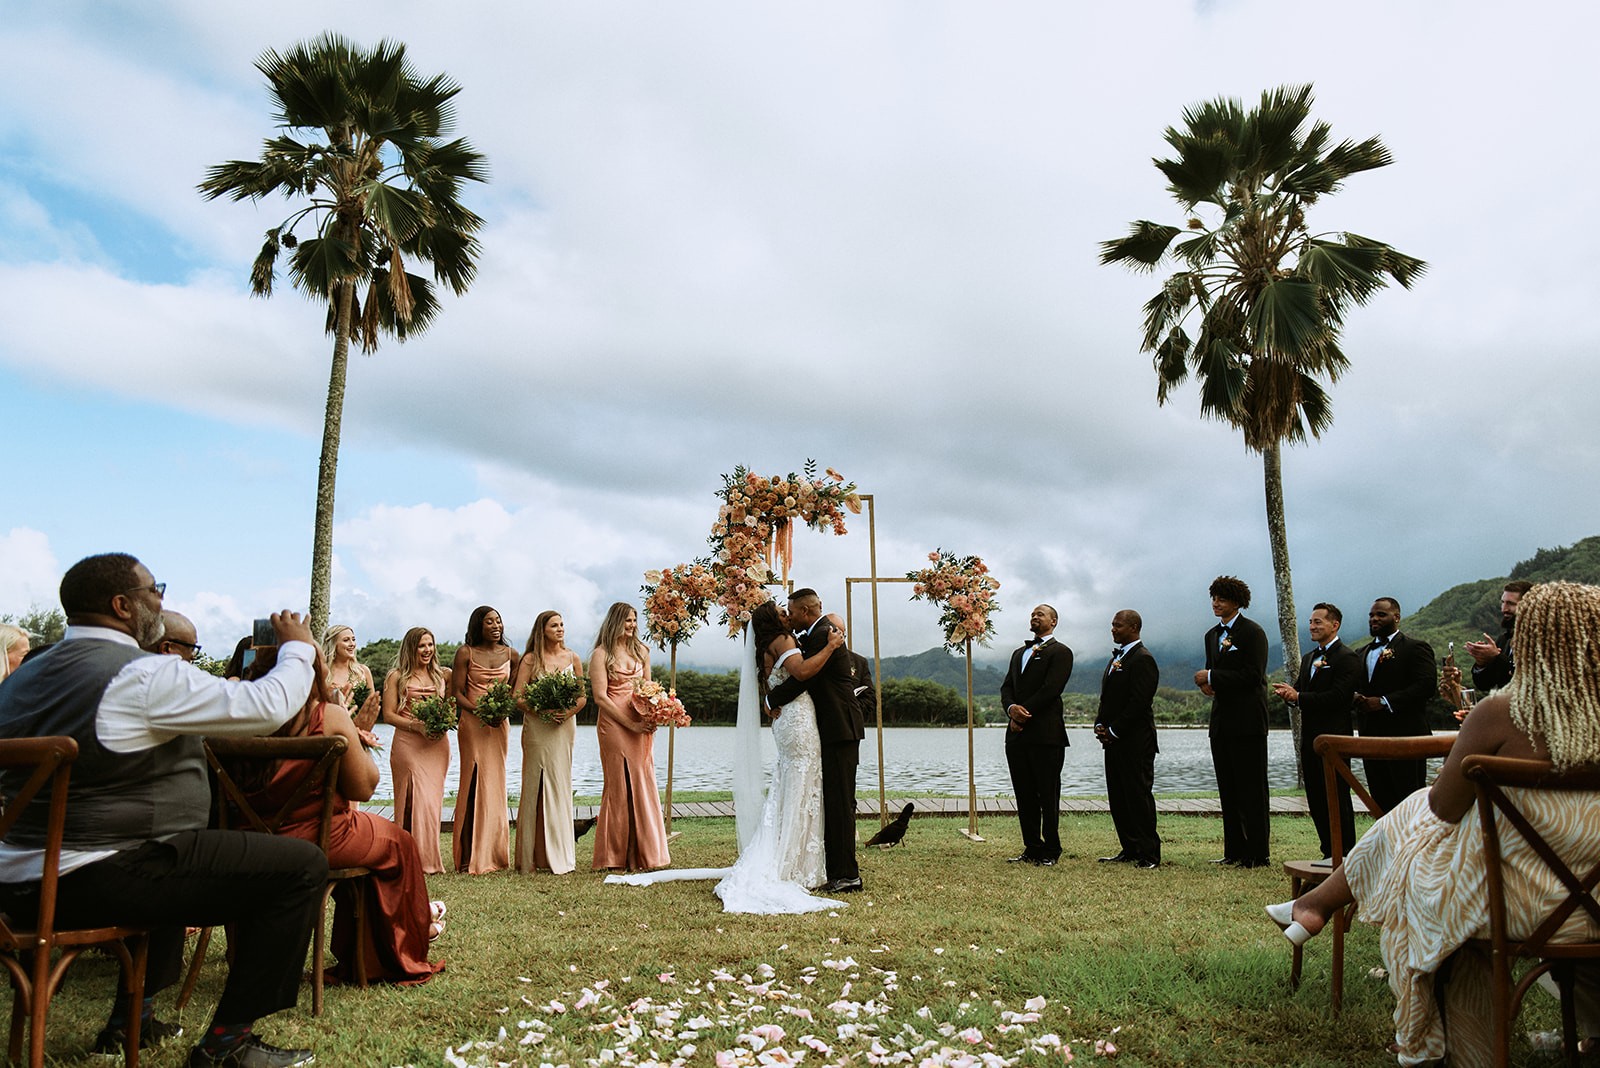 Ceremony - Wedding at Kualoa Ranch in Honolulu, Hawaii